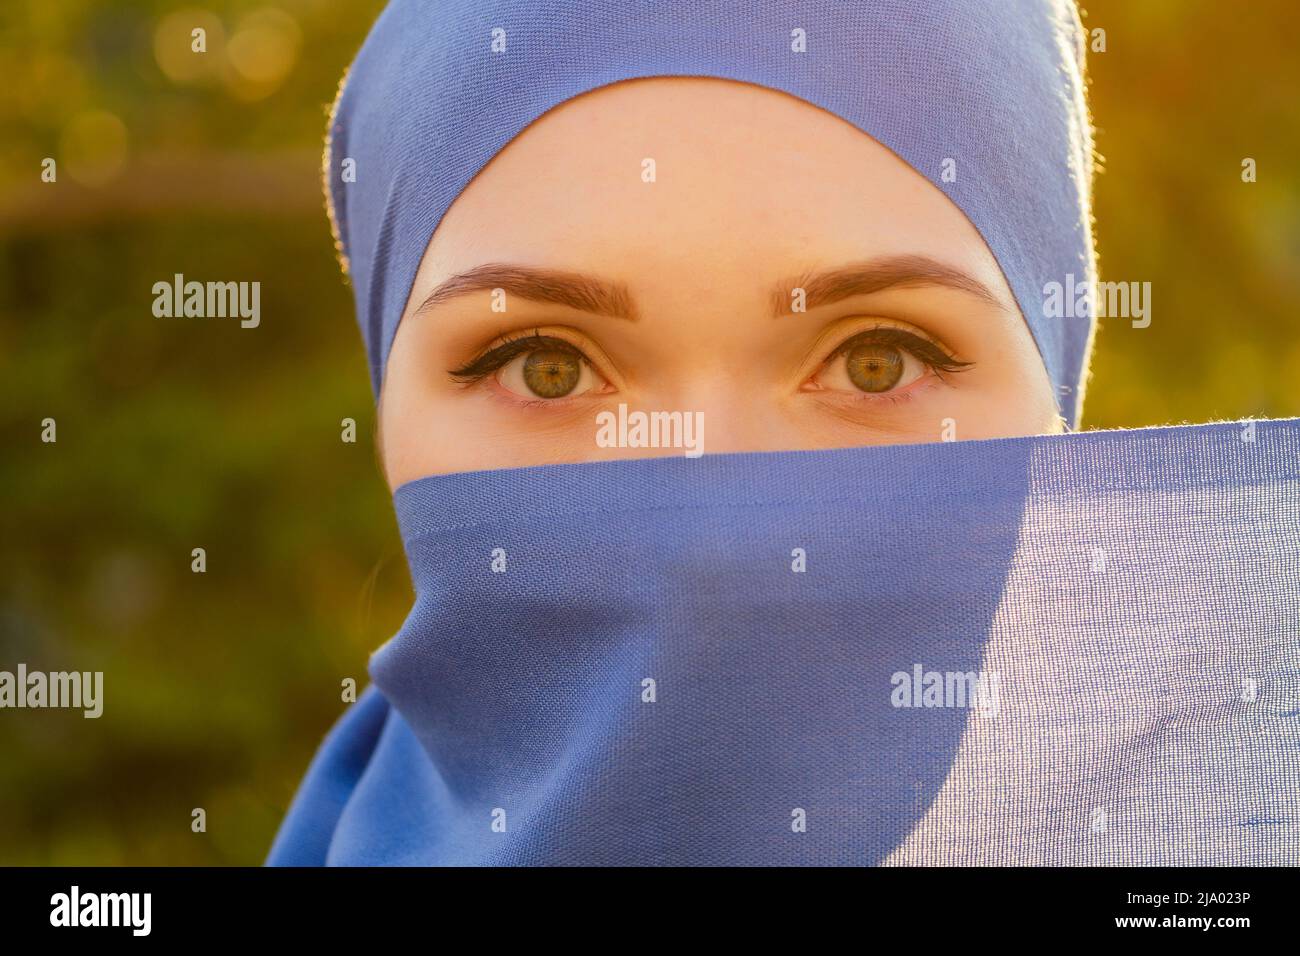 Portrait d'une belle femme musulmane aux yeux verts portant un foulard bleu visage fermé couvert d'aveil arrière-plan arbres forestiers dans le parc Banque D'Images